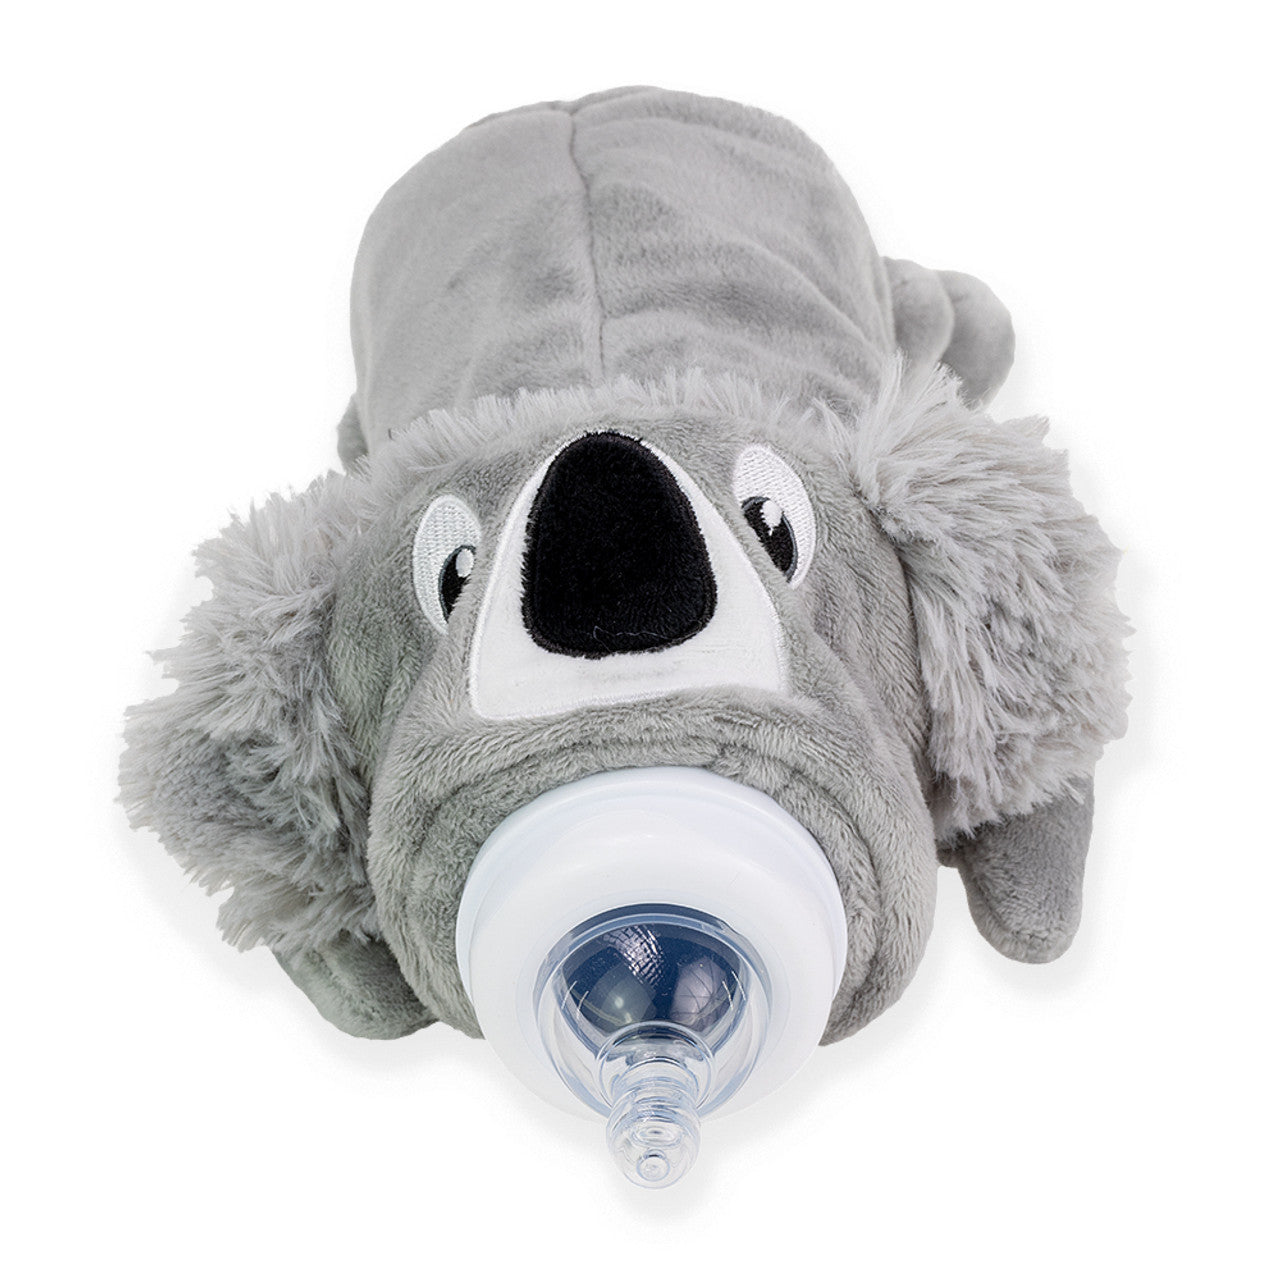 Rearz - Bottle Buddy - Critter Caboose Koala